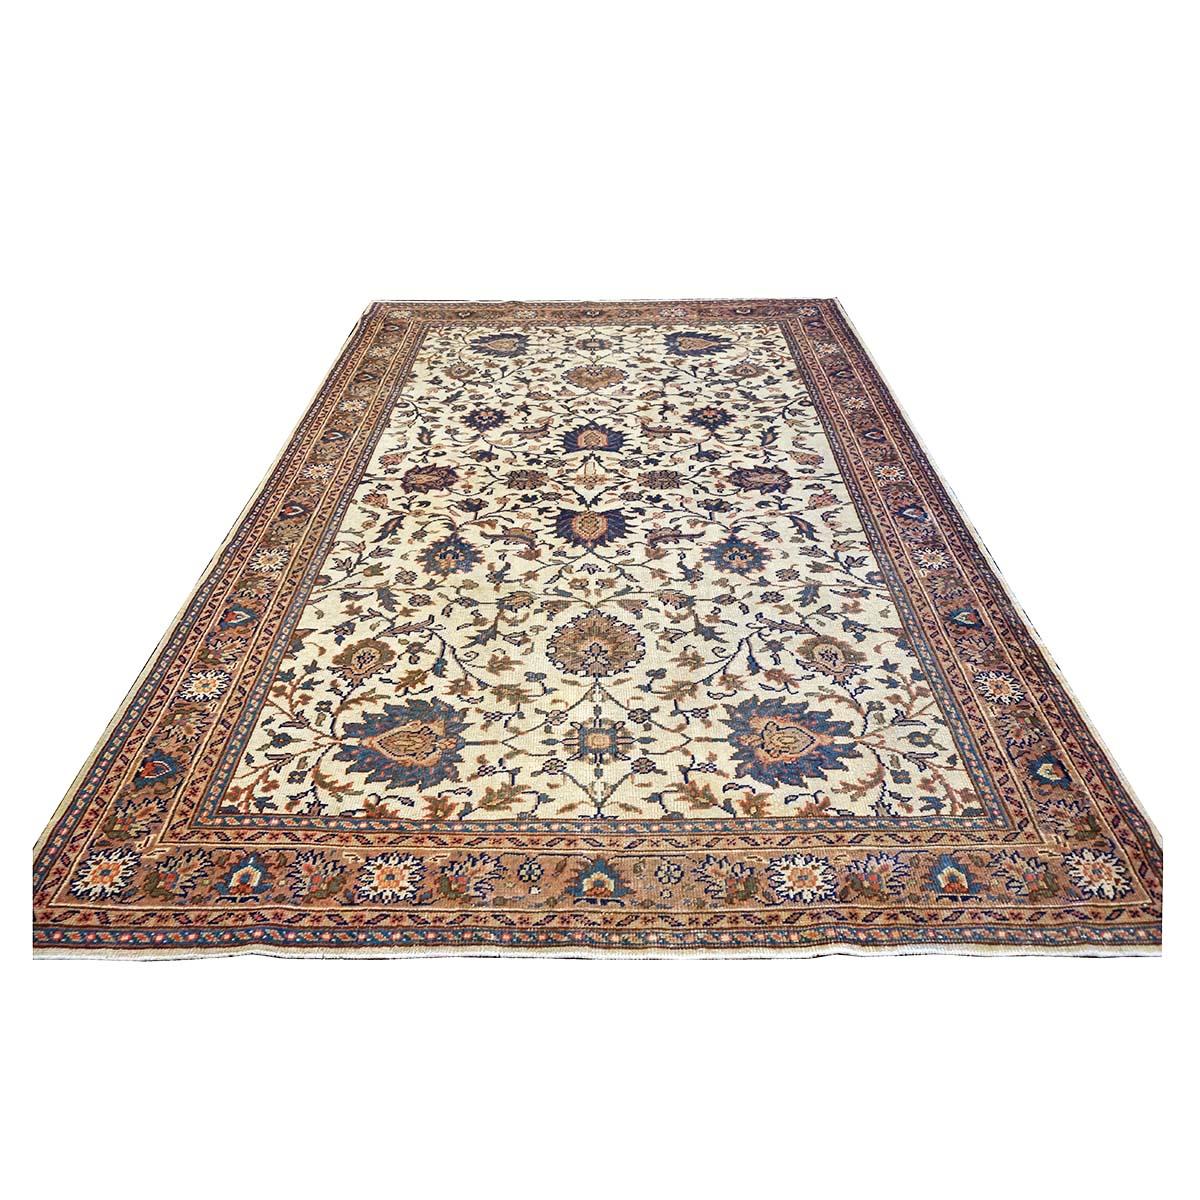 Ashly Fine Rugs présente un ancien tapis persan Mahal 7x10 de couleur ivoire, havane et bleue, fait à la main. Originaires de la région de Mahallat en Perse (Iran central), les tapis Mahal sont très recherchés par les décorateurs d'intérieur et les